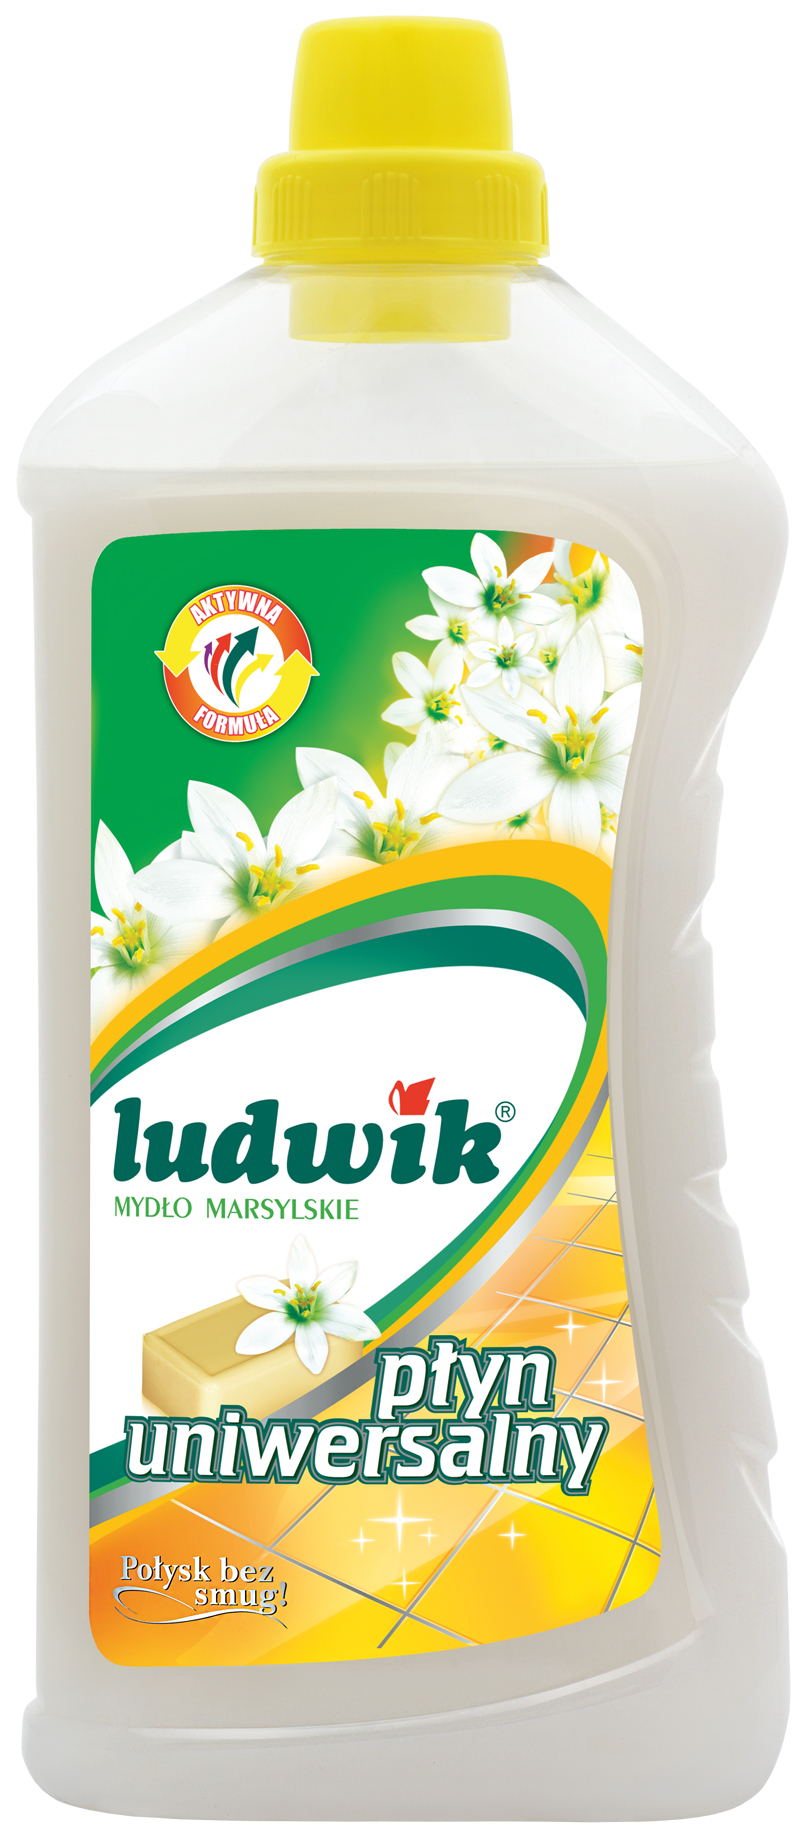 Универсальное чистящее средство Ludwik марсельское мыло 1 л